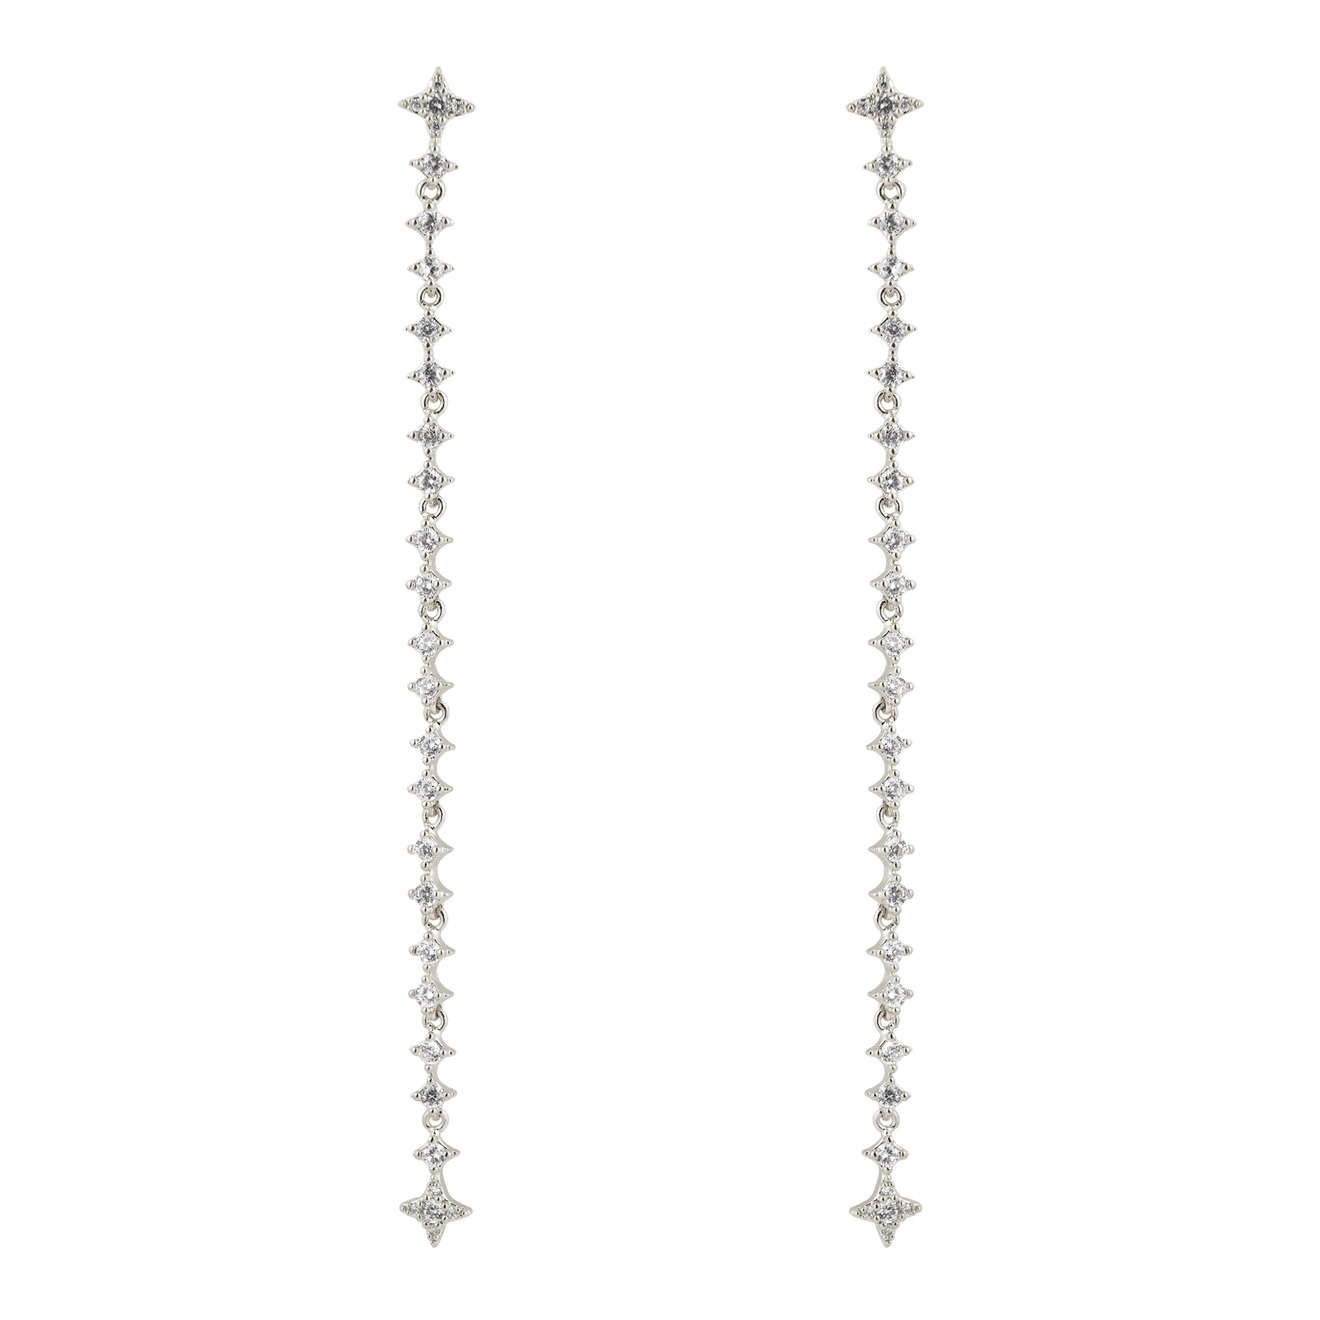 Free Form Jewelry Серебристые длинные серьги с кристаллами-звездами серьги free form jewelry серебристые вытянутые с кристаллами 2 шт